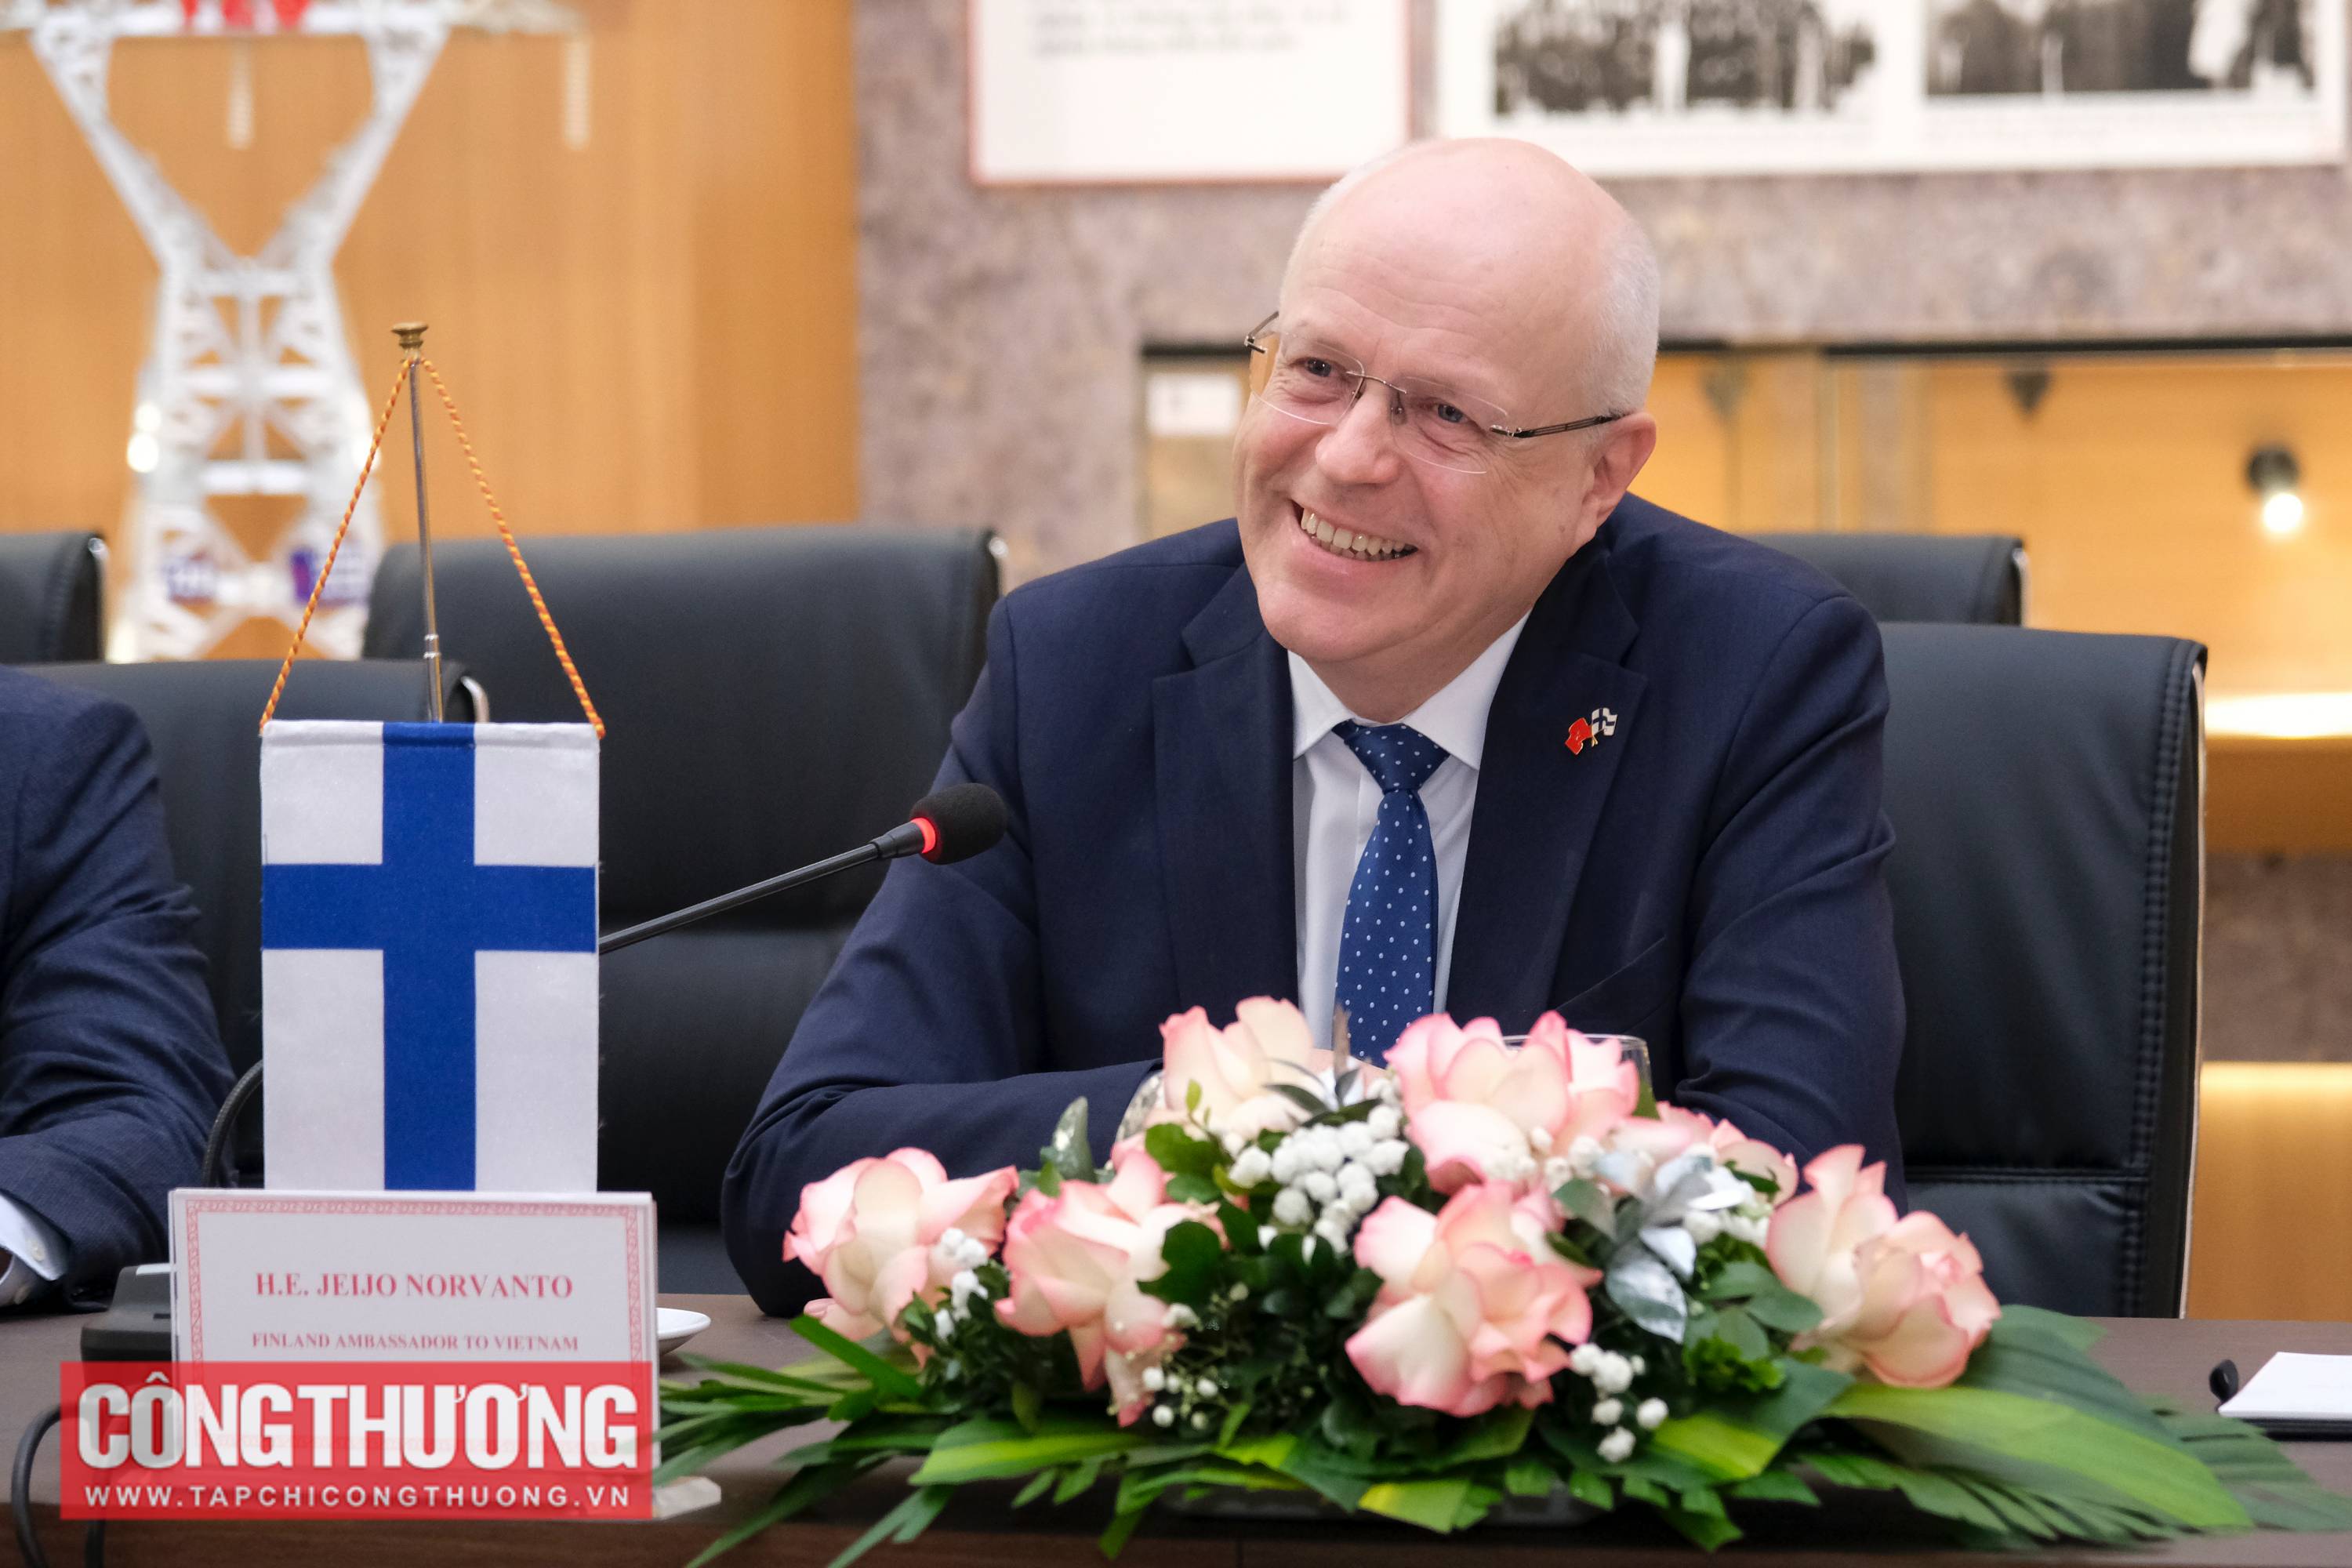 Đại sứ Phần Lan tại Việt Nam Keijo Norvanto mong muốn hỗ trợ các doanh nghiệp Phần Lan mở rộng hoạt động hợp tác đầu tư vào thị trường Việt Nam trong nhiều lĩnh vực, đặc biệt là năng lượng